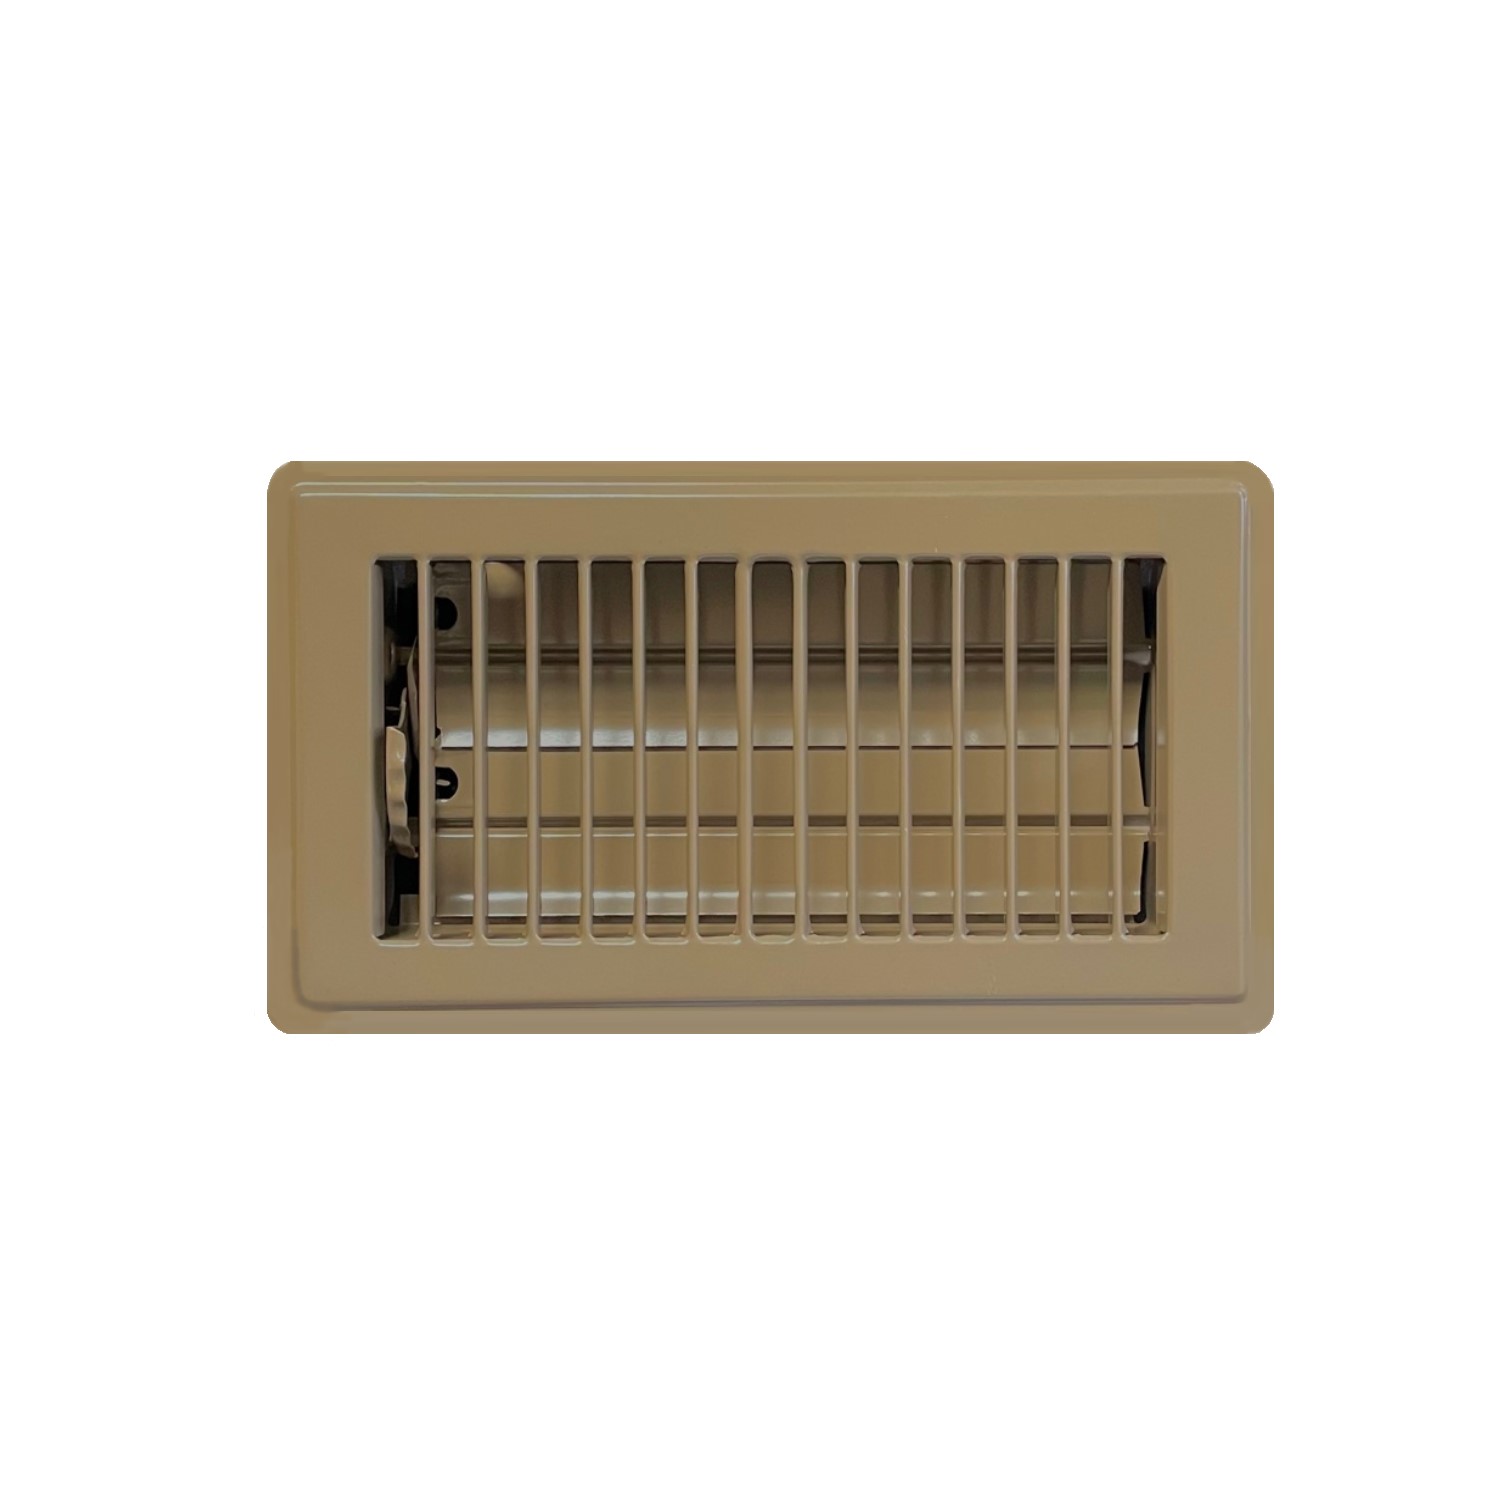 4 X 10 Stamped Steel Floor Register - Brown